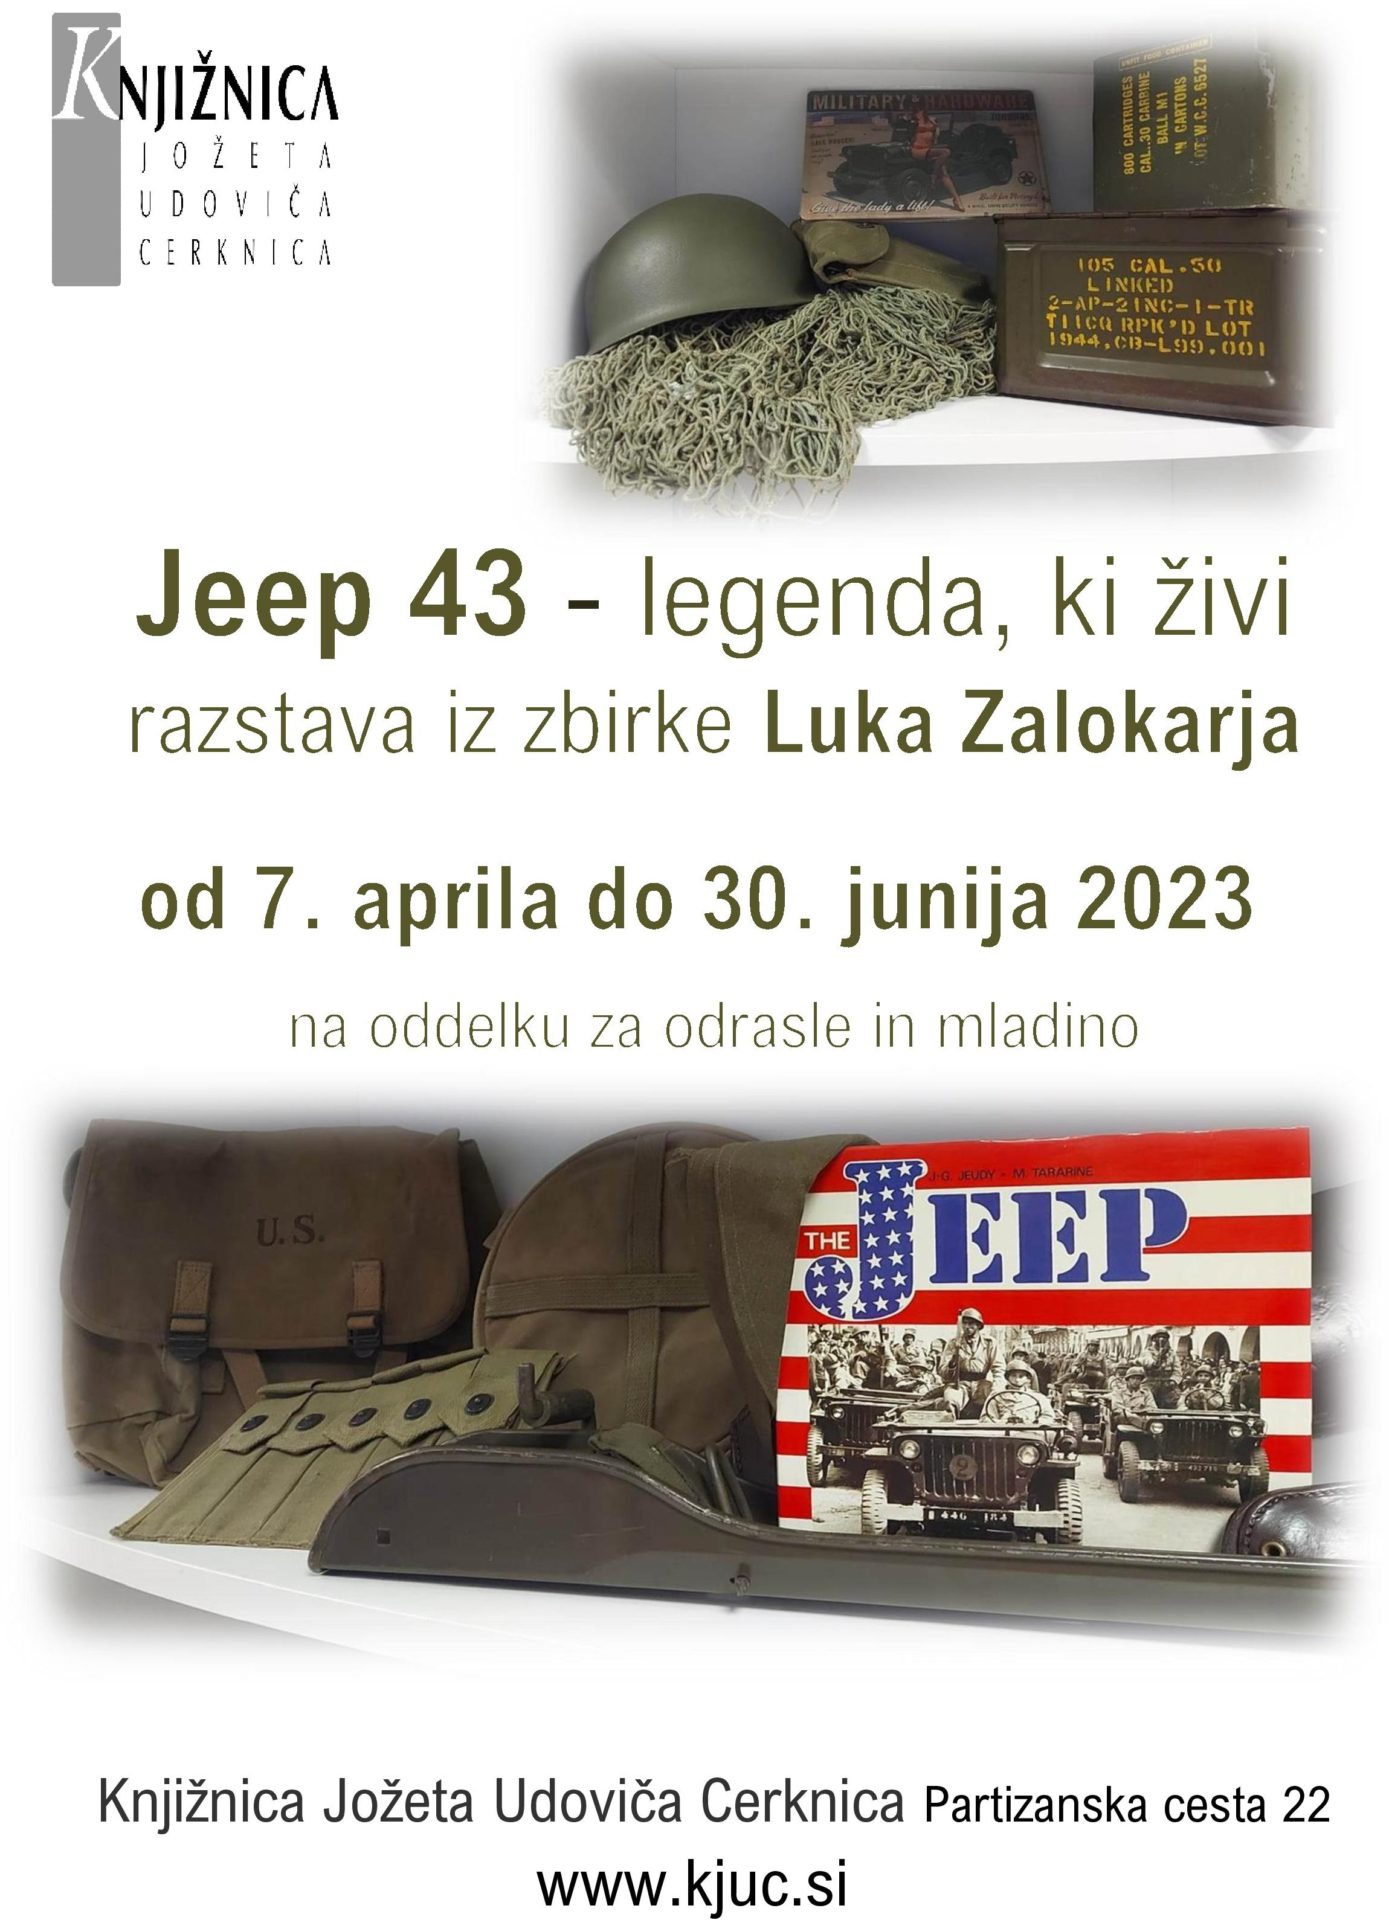 Jeep 43 page 001 - Luka Zalokar: Jeep 43 - legenda, ki živi - razstava